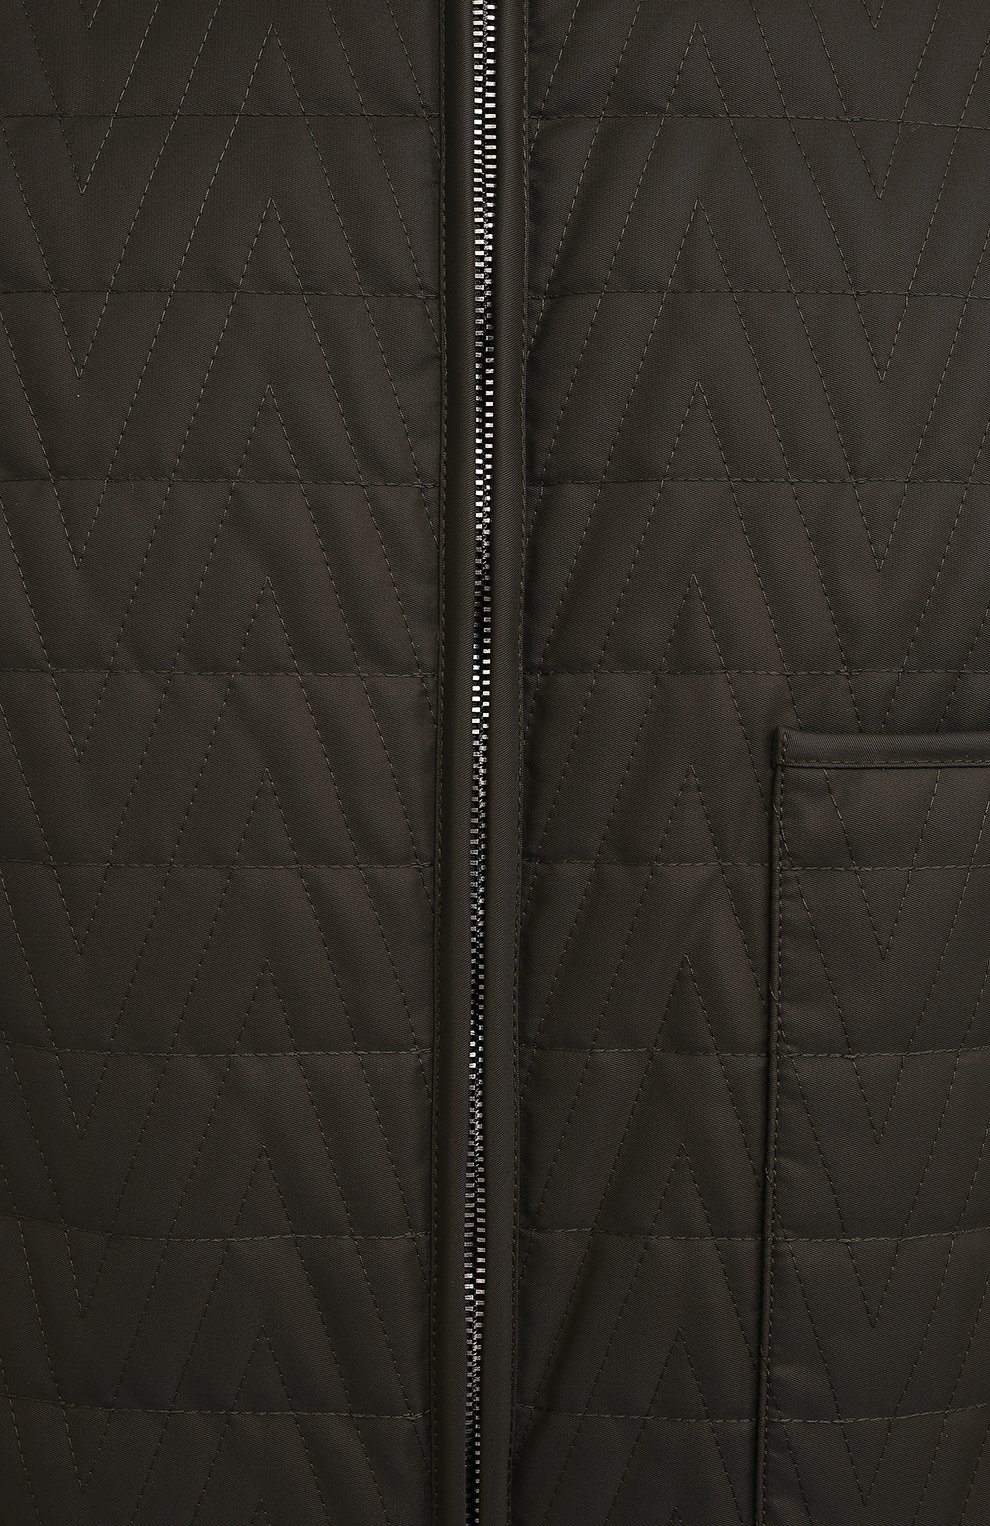 Мужская утепленная куртка VALENTINO хаки цвета, арт. XV3CLH367TV | Фото 5 (Кросс-КТ: Куртка; Рукава: Длинные; Длина (верхняя одежда): До середины бедра; Материал внешний: Синтетический материал; Мужское Кросс-КТ: утепленные куртки; Стили: Милитари; Материал подклада: Синтетический материал)